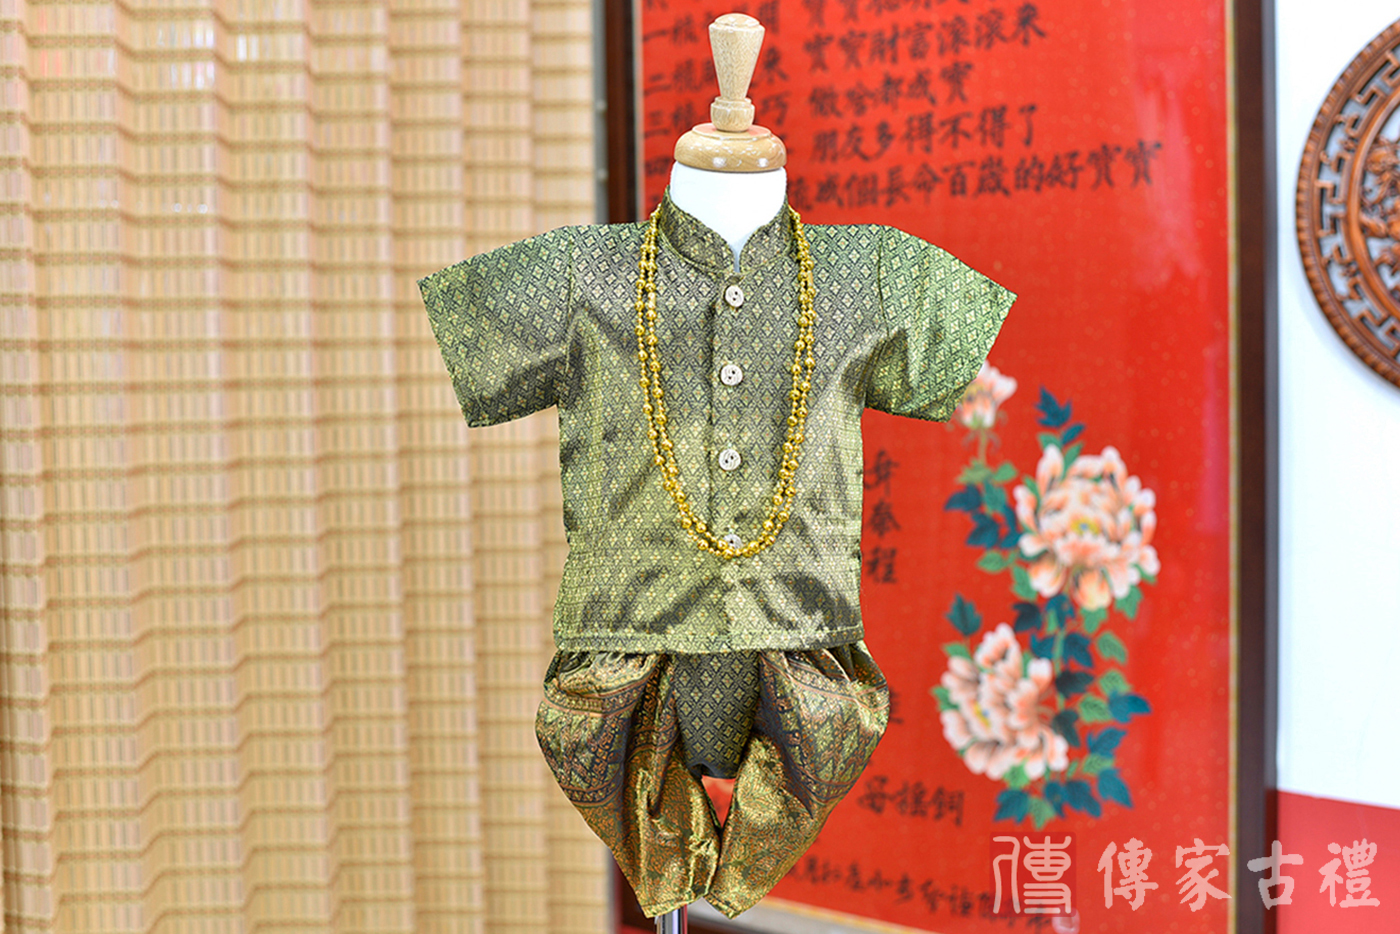 2024-02-23小孩皇室泰服古裝禮服。典雅橄欖綠色絲綢與繁複金色泰絲的上衣搭配華貴金飾的泰式古裝禮服。照片集